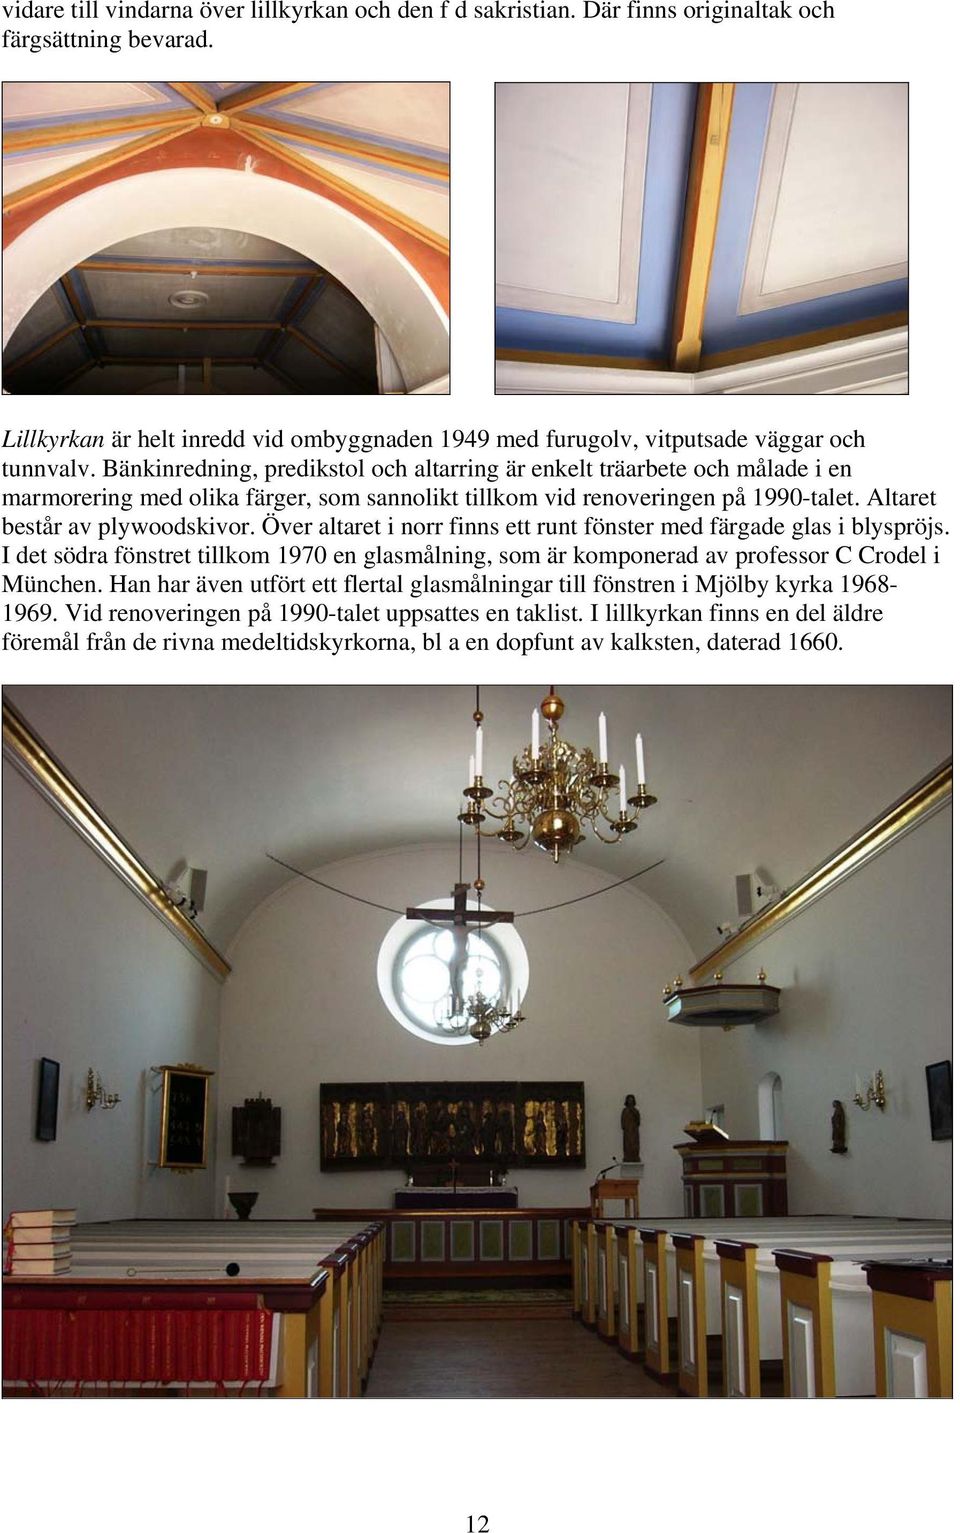 Bänkinredning, predikstol och altarring är enkelt träarbete och målade i en marmorering med olika färger, som sannolikt tillkom vid renoveringen på 1990-talet. Altaret består av plywoodskivor.